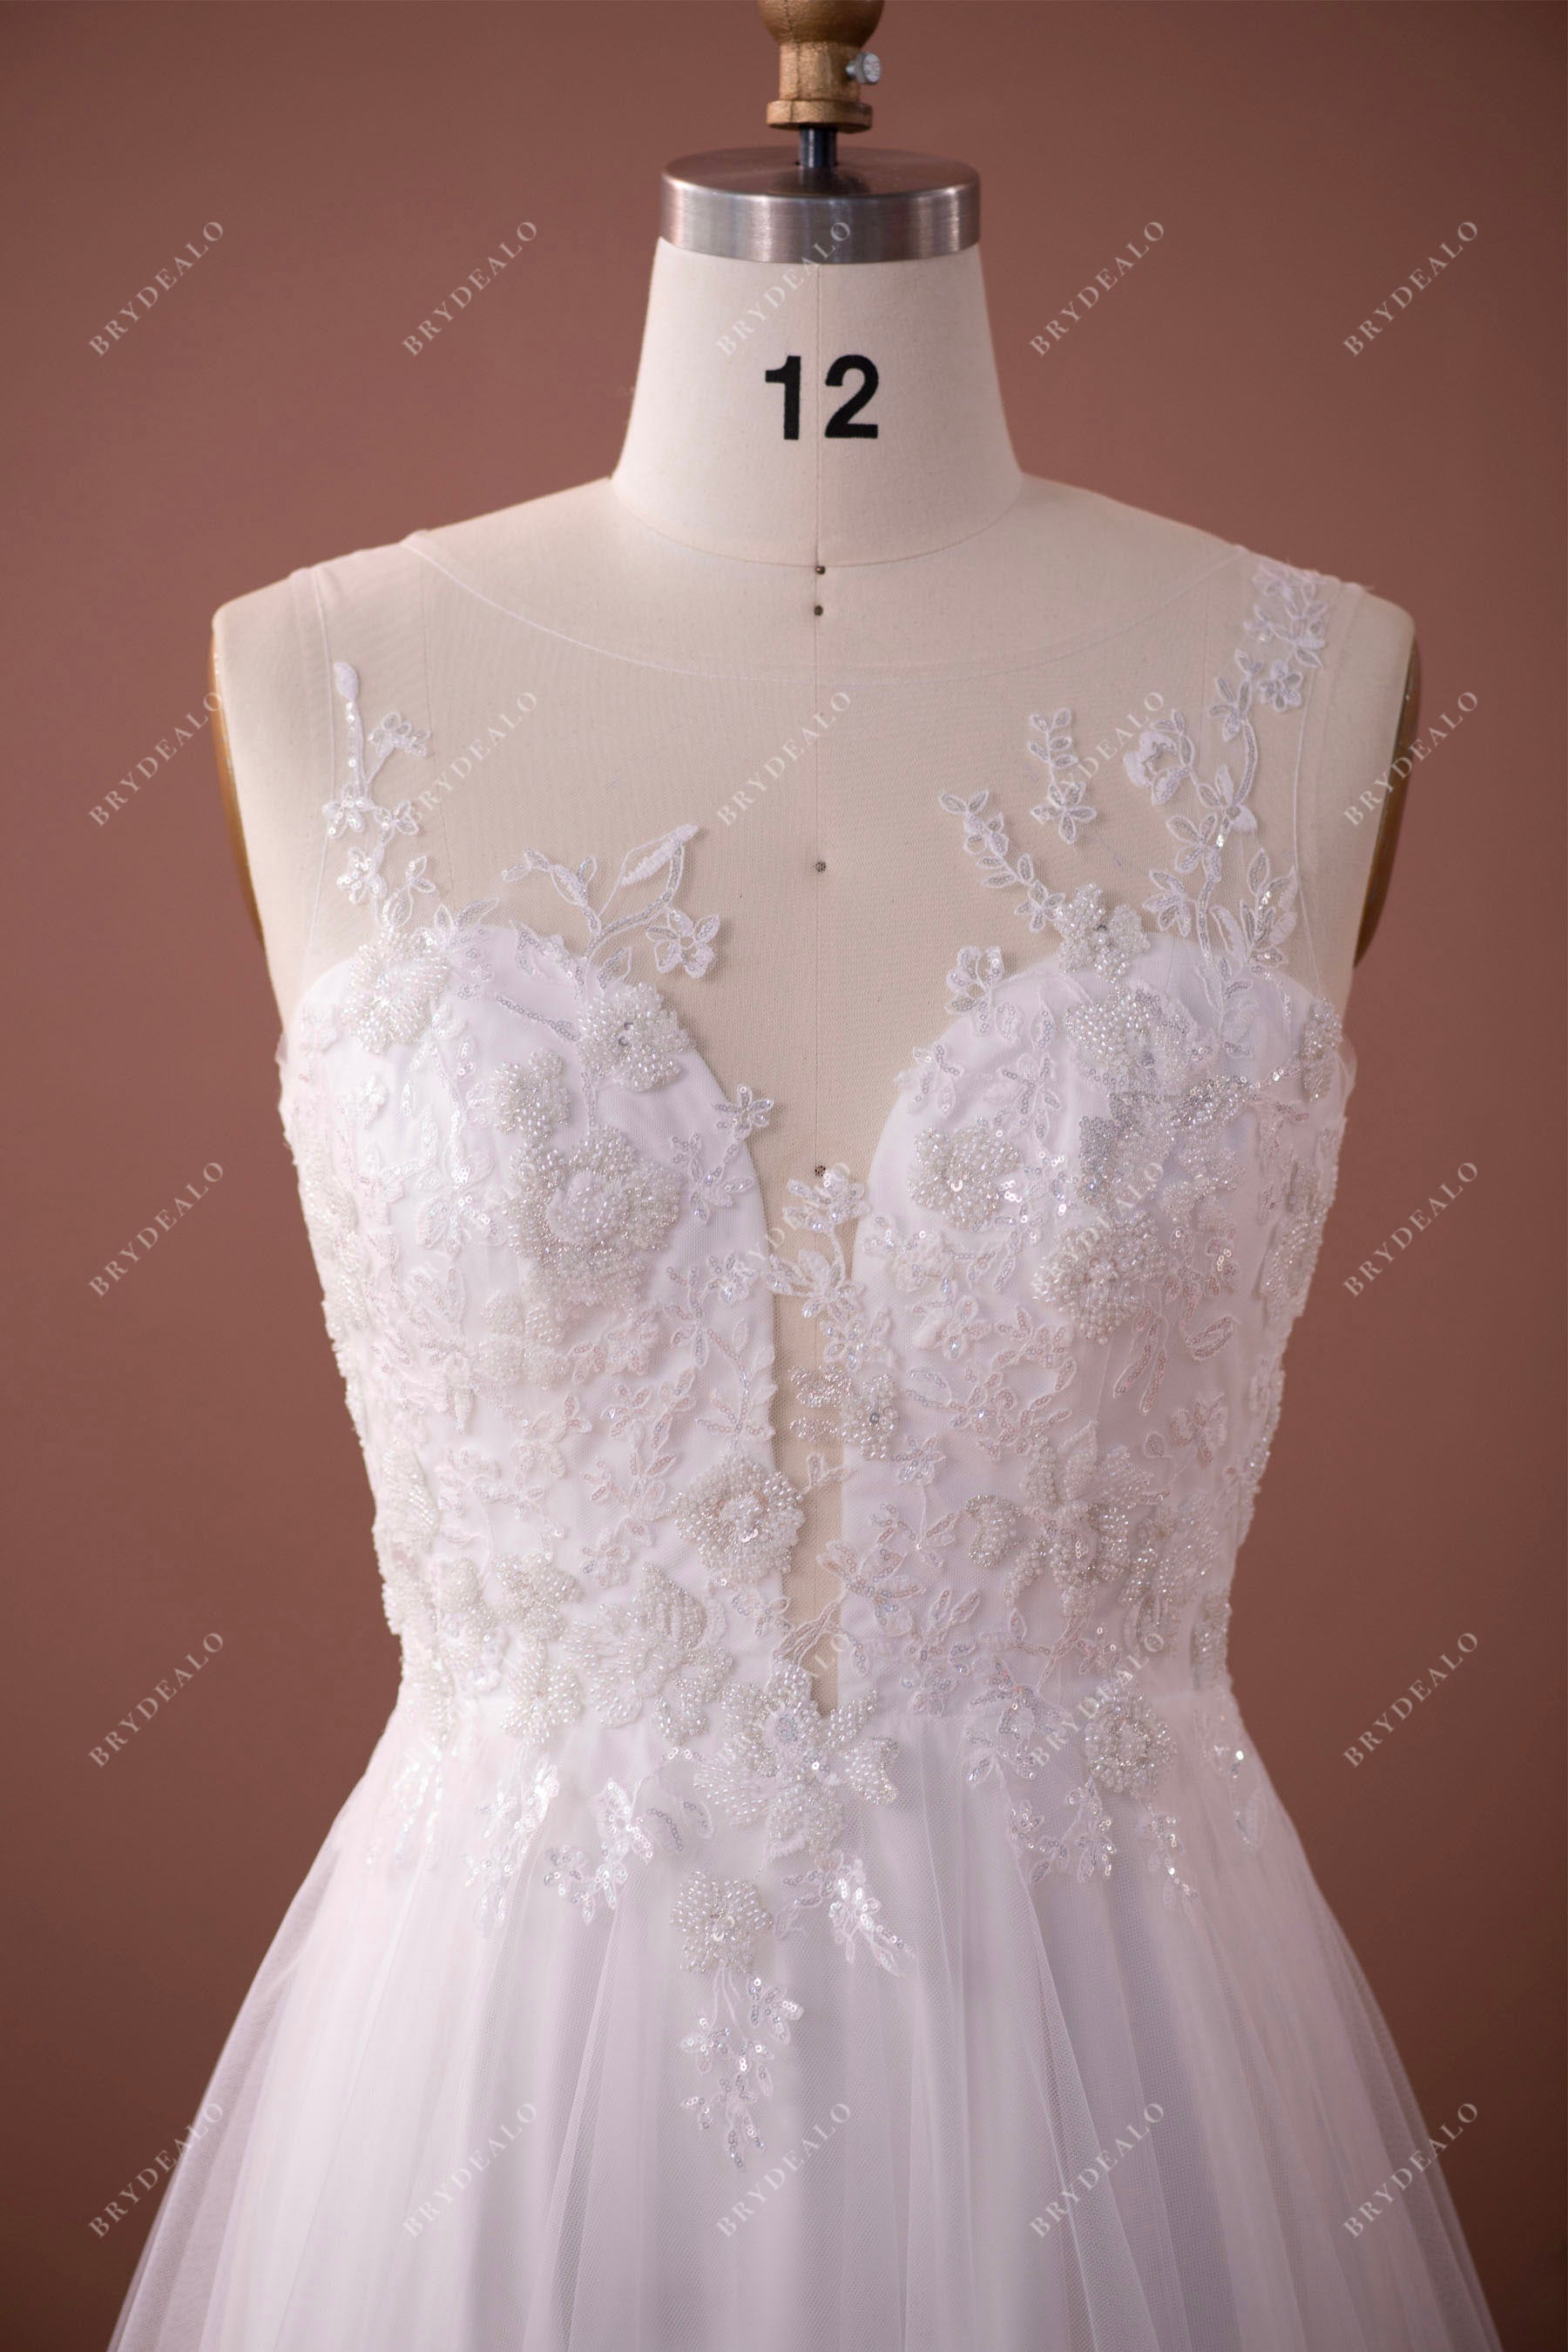 Plunging neck sleeveless gorgeous wedding dress